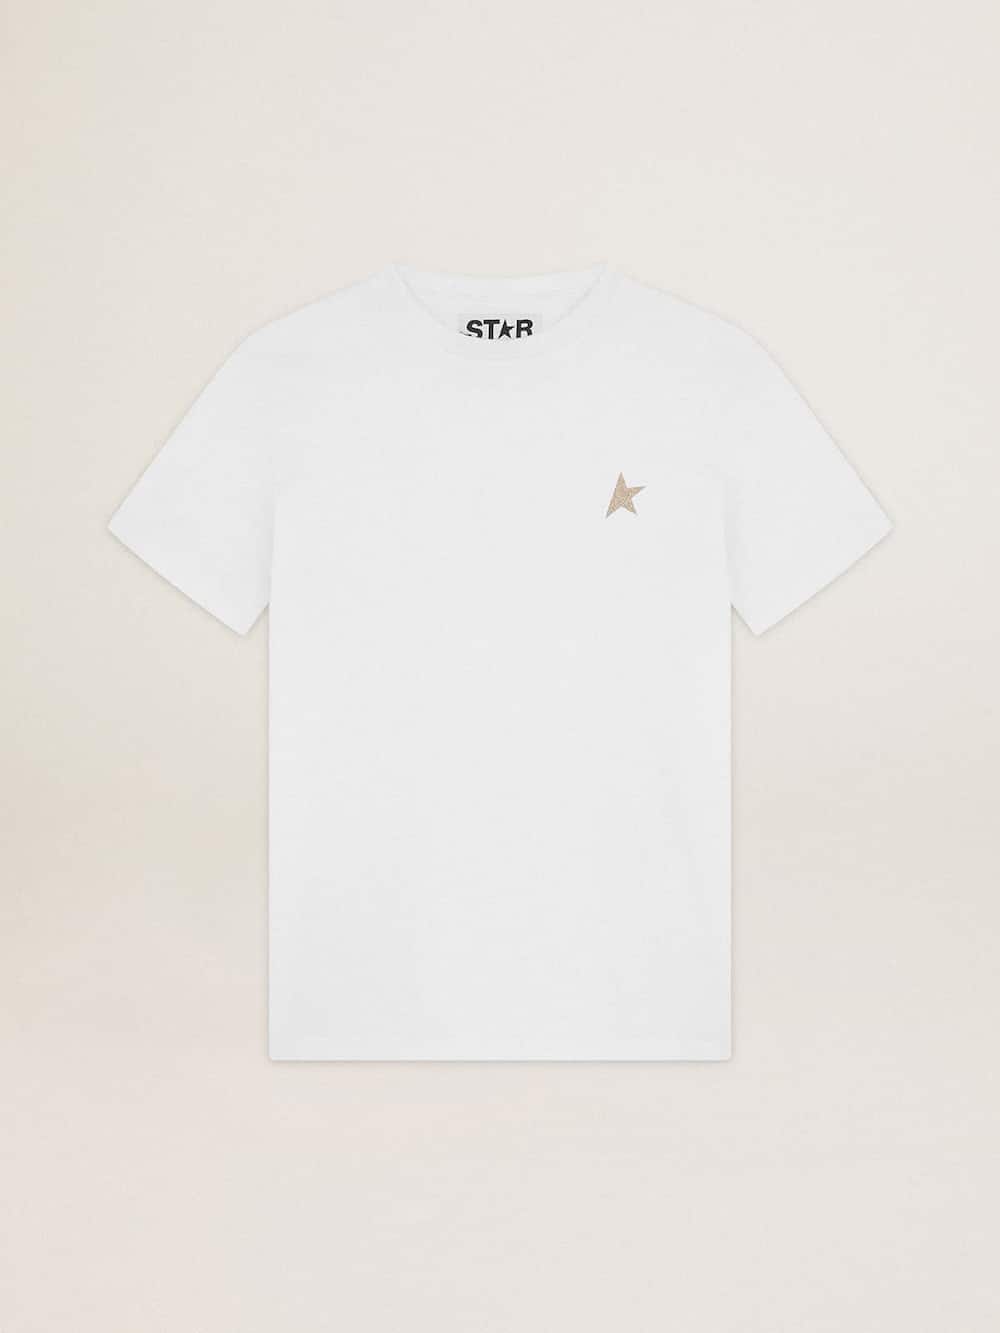 Golden Goose - Camiseta branca Coleção Star com estrela de glitter dourado na frente in 